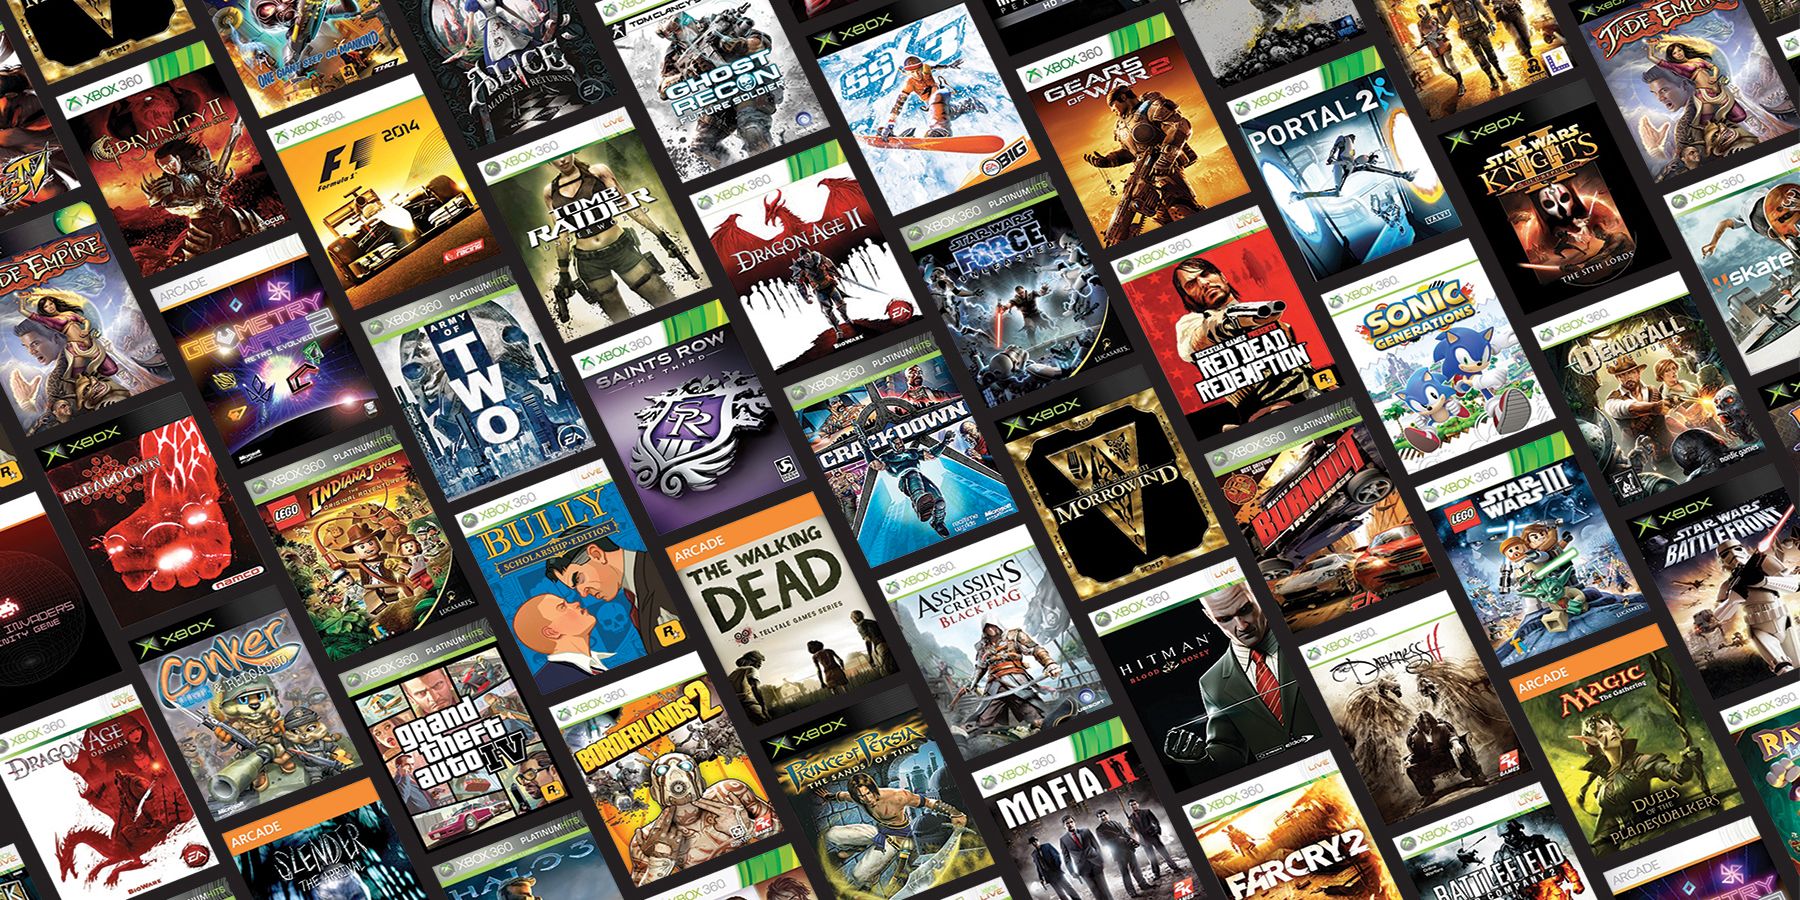 Gerücht: Xbox könnte rückwärts kompatiblere Xbox 360 -Spiele erhalten